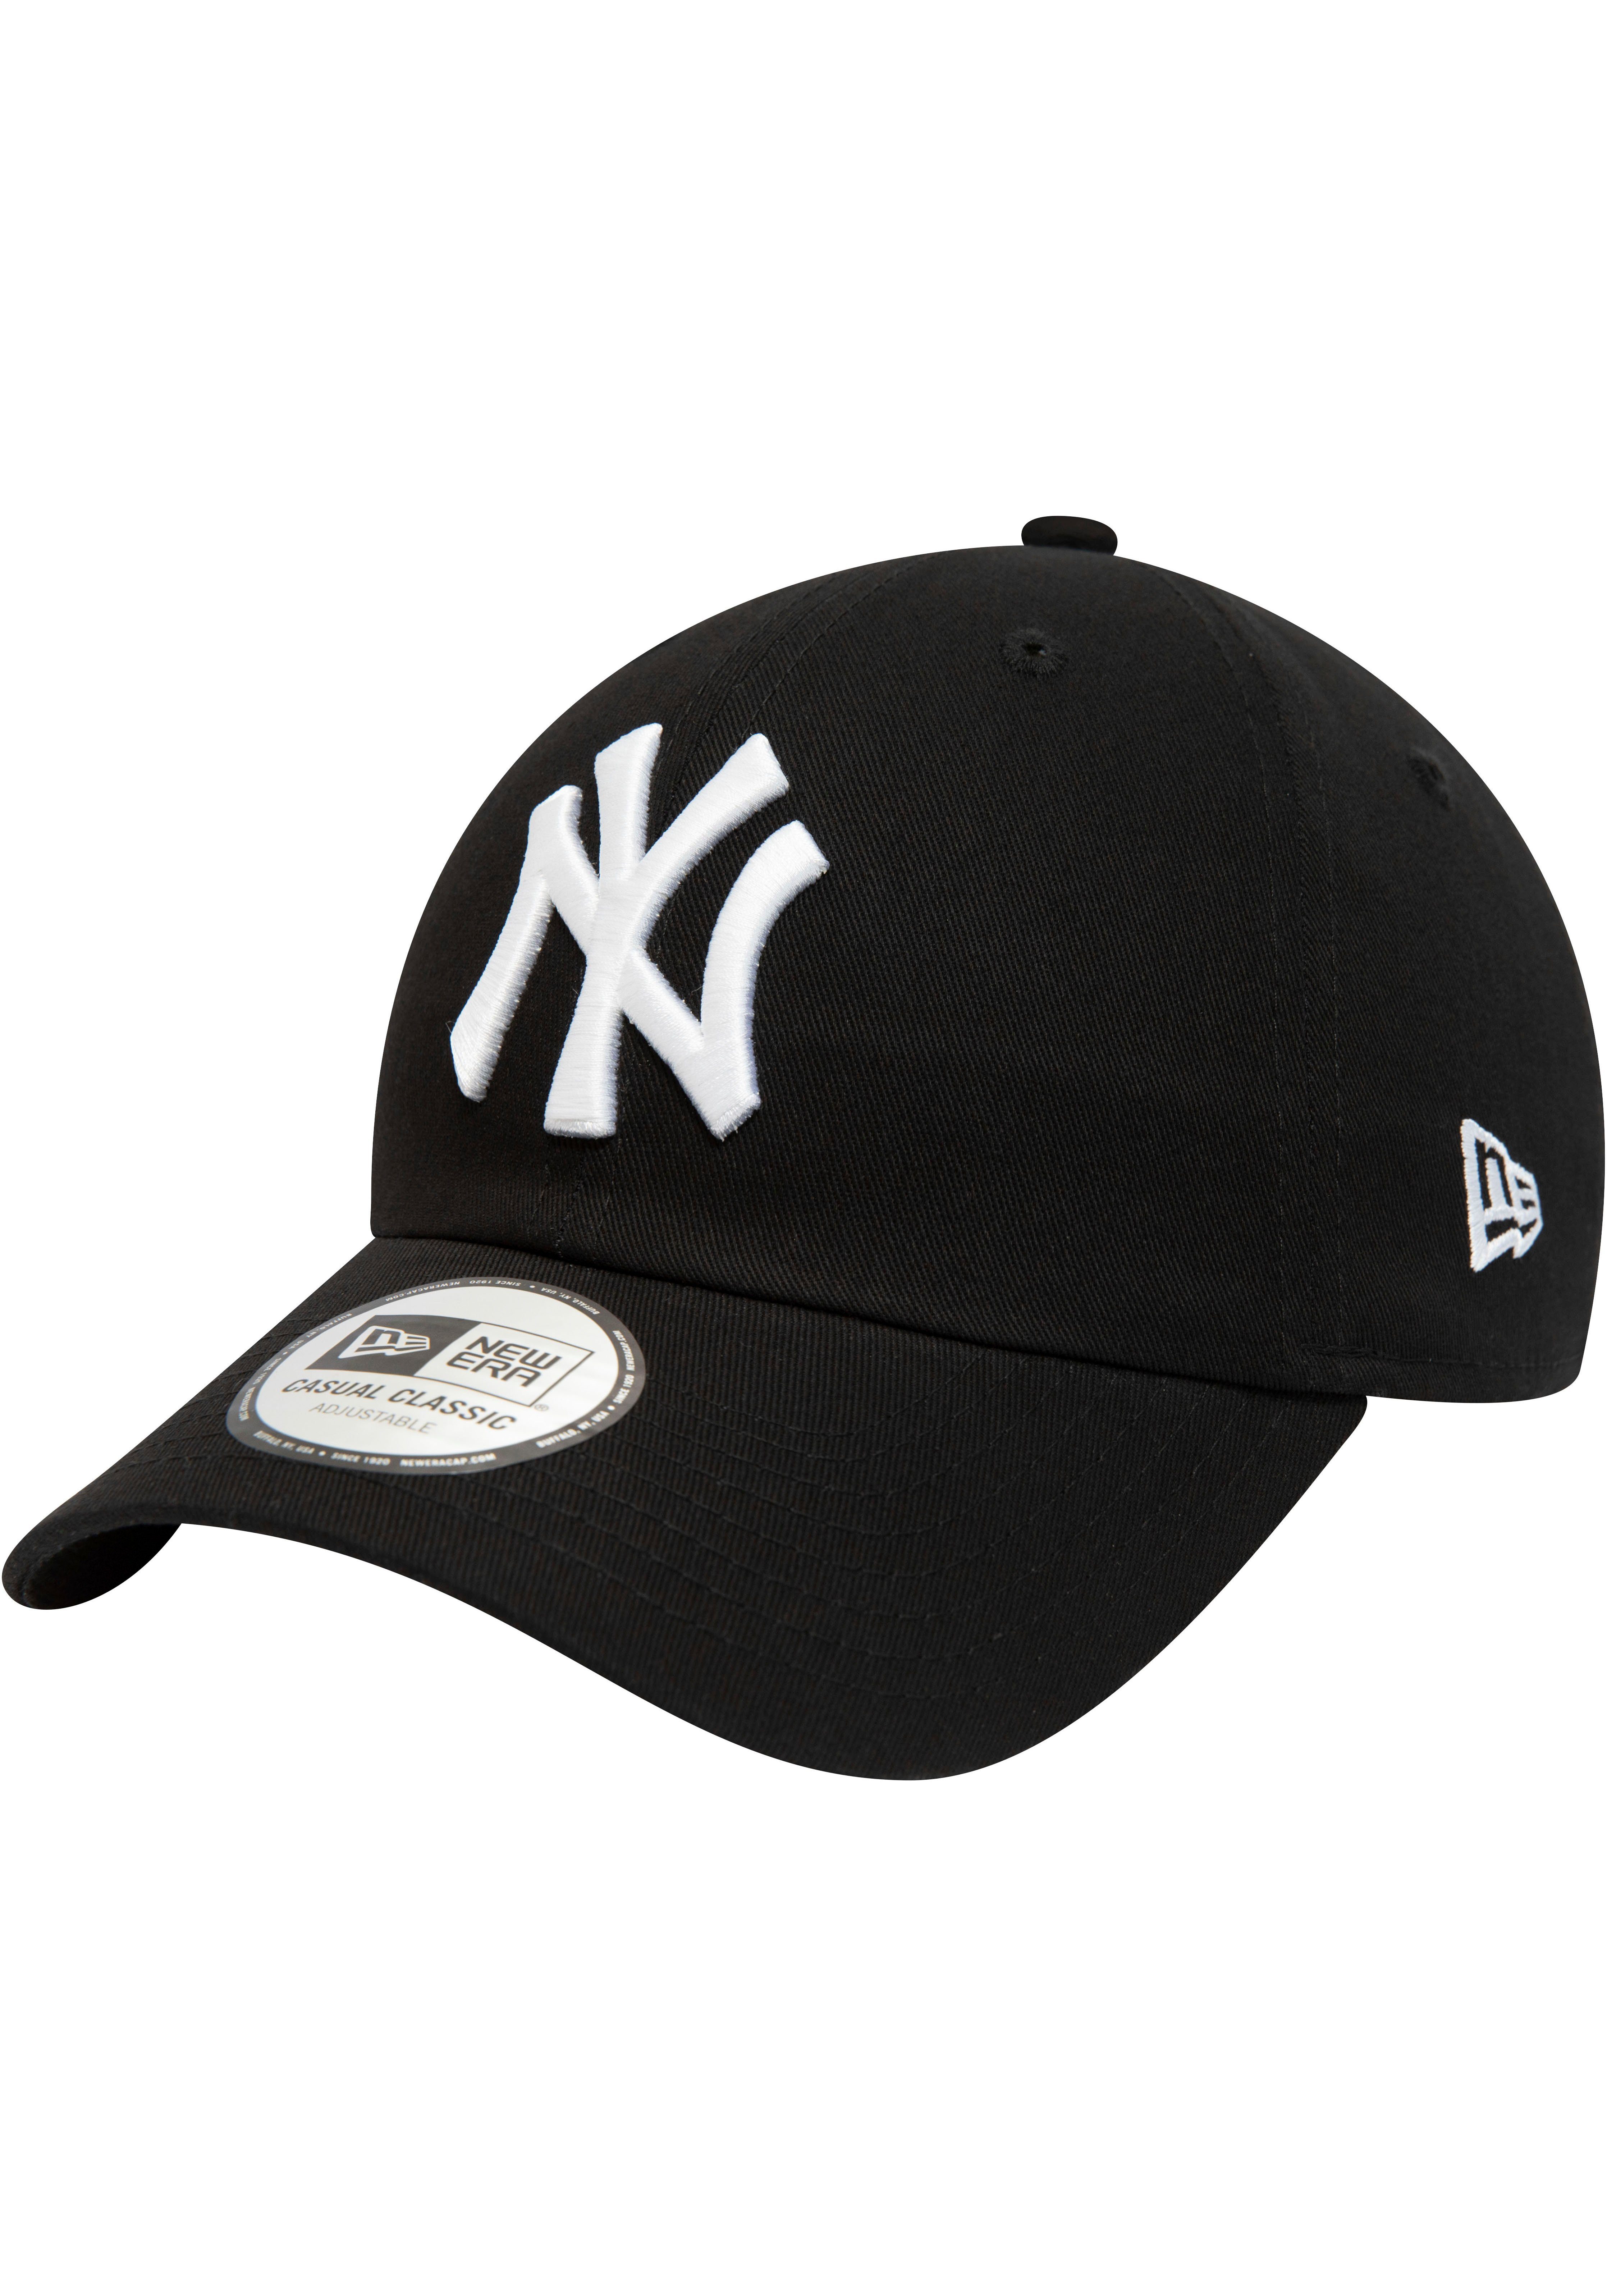 New Era NY Cap New Baseball Cap 940Leag Cap Era